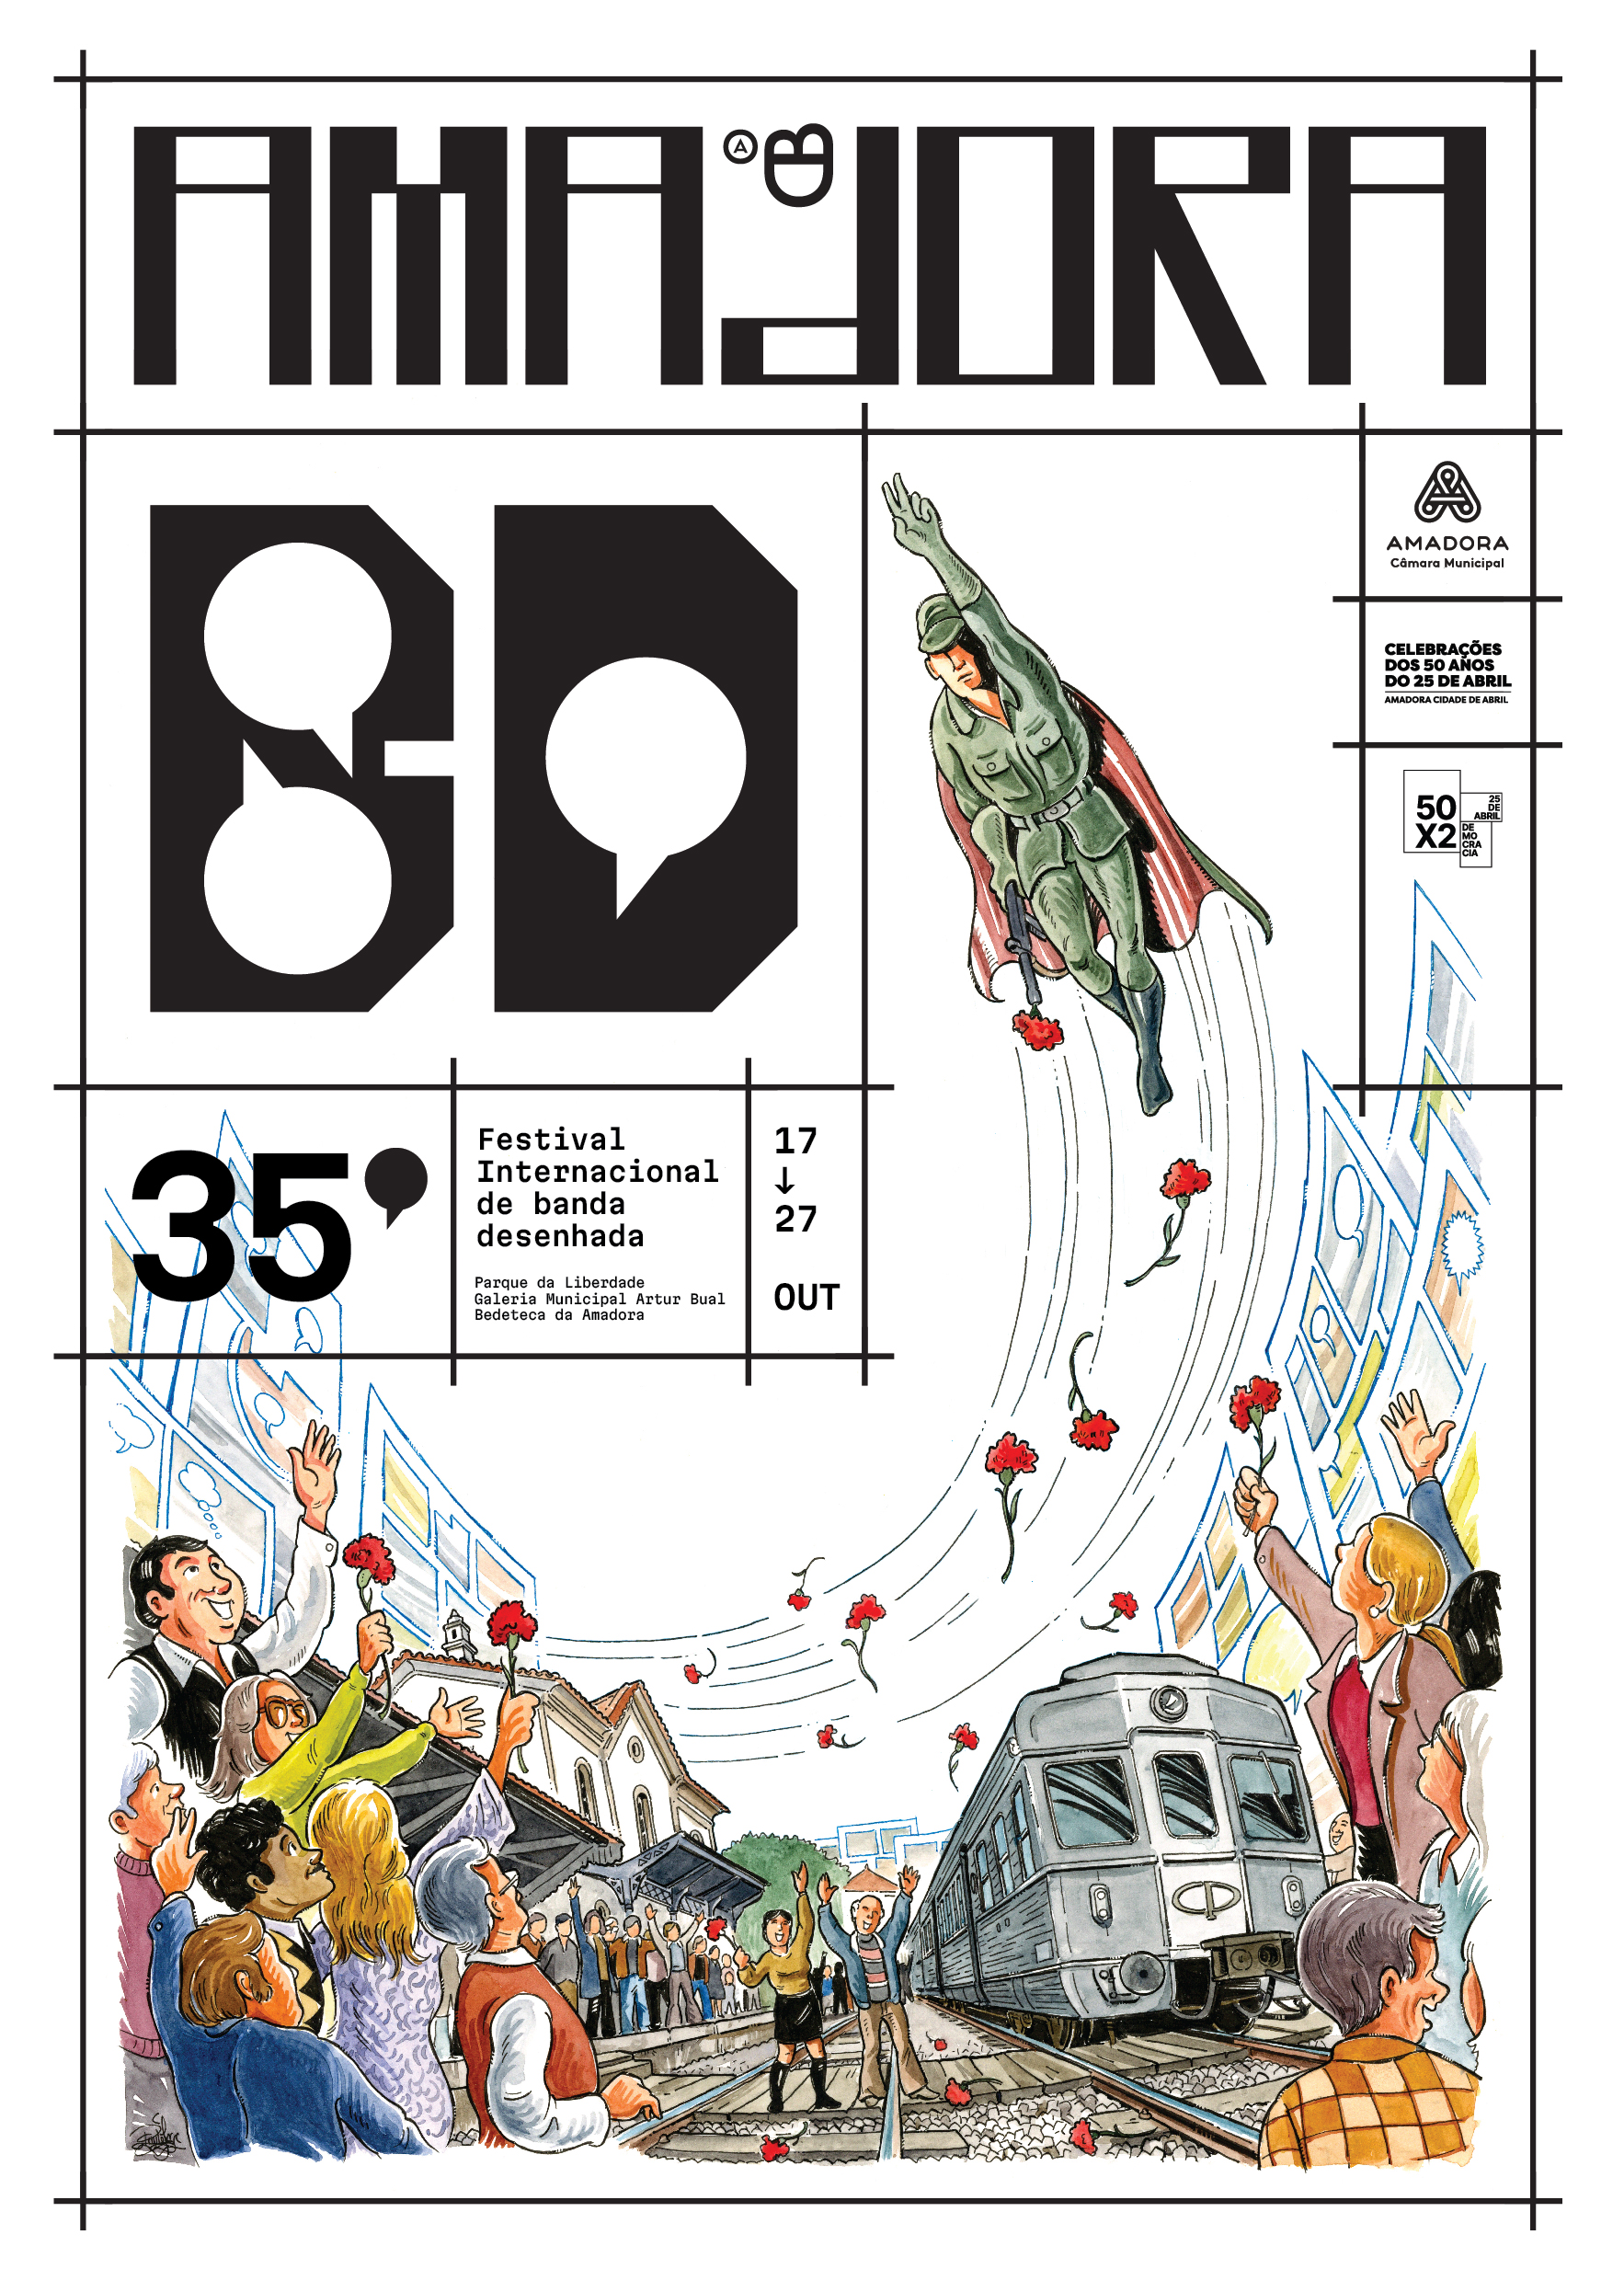 ‘Humanidade’ é o tema da 35.ª edição do Amadora BD, o maior festival de banda desenhada do país